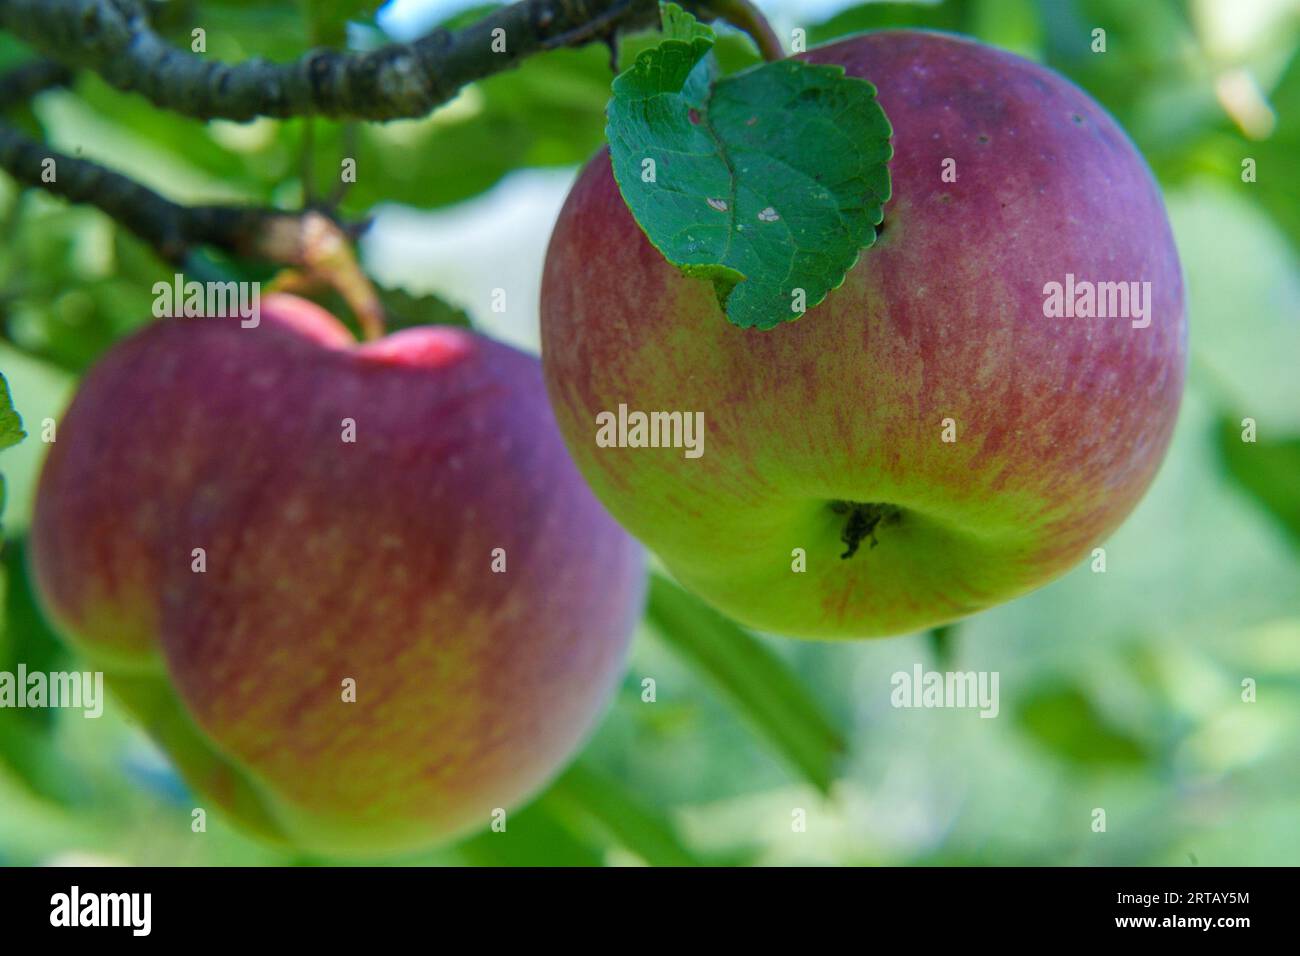 Ein lebendiges und farbenfrohes Bild eines fruchtbaren Apfelbaums mit Reifen Äpfeln, die zur Ernte bereit sind Stockfoto